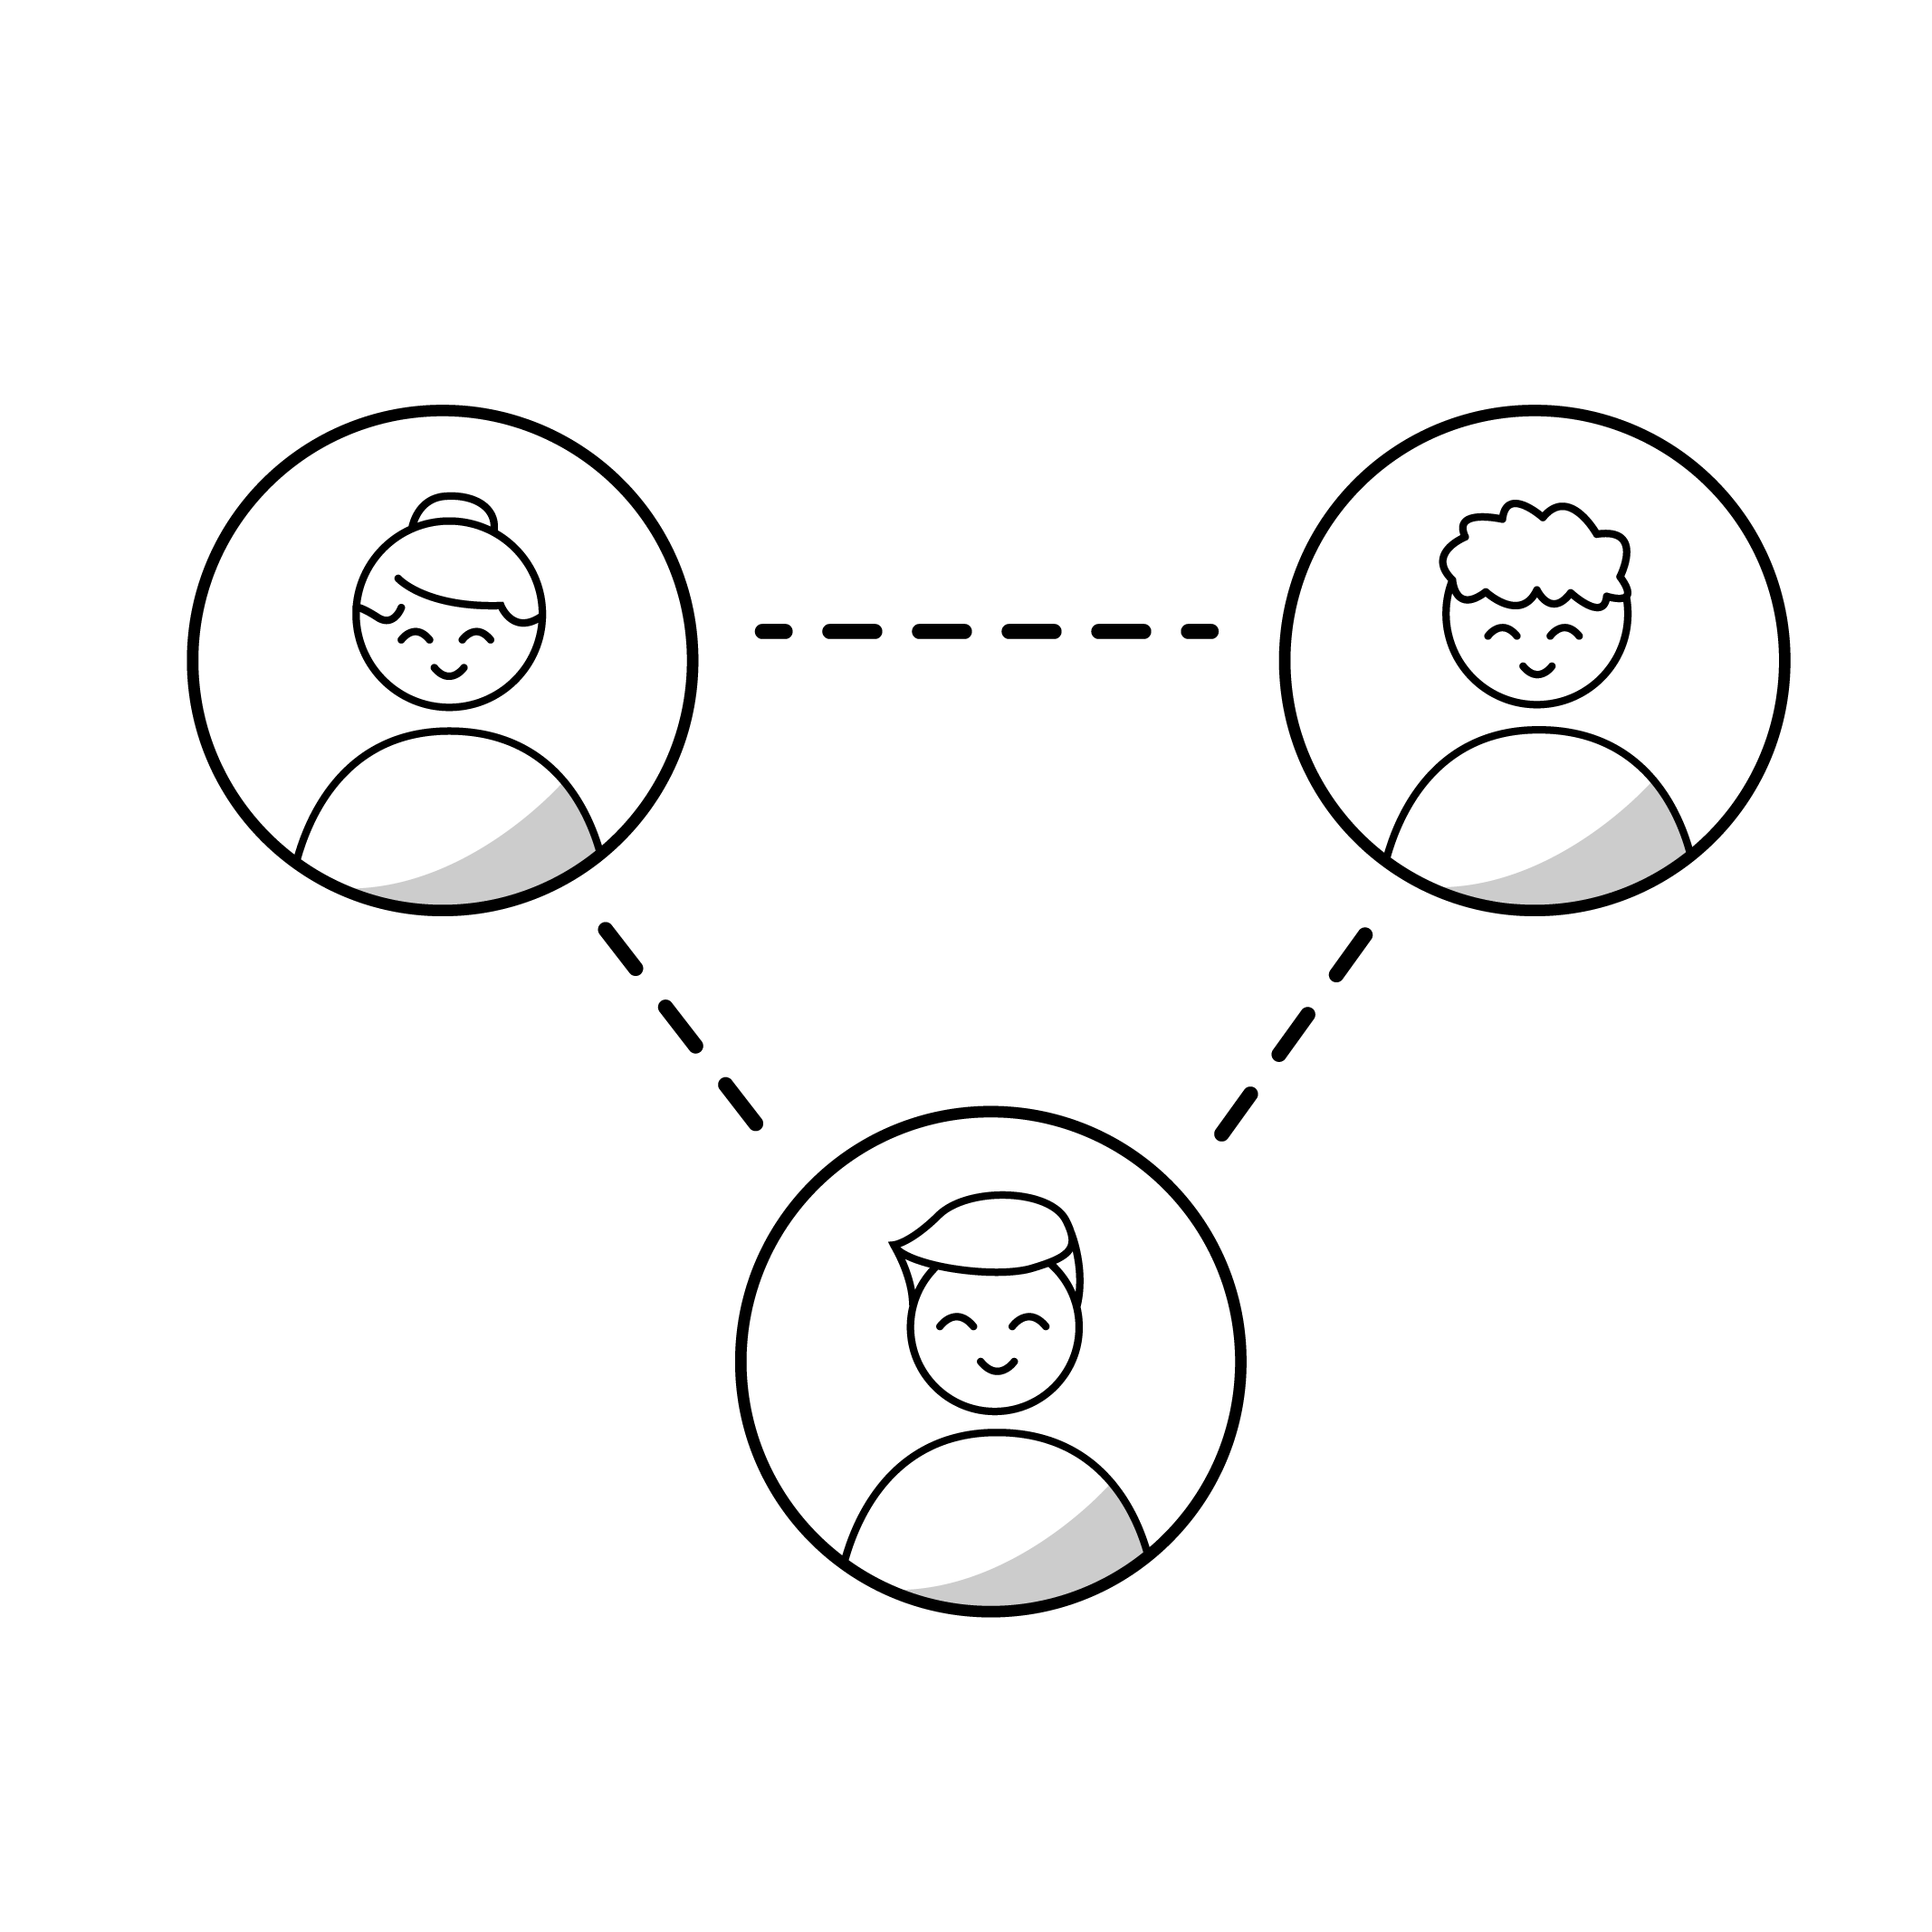 pictogramme noir de trois cercles reliés contenant chacun une personne